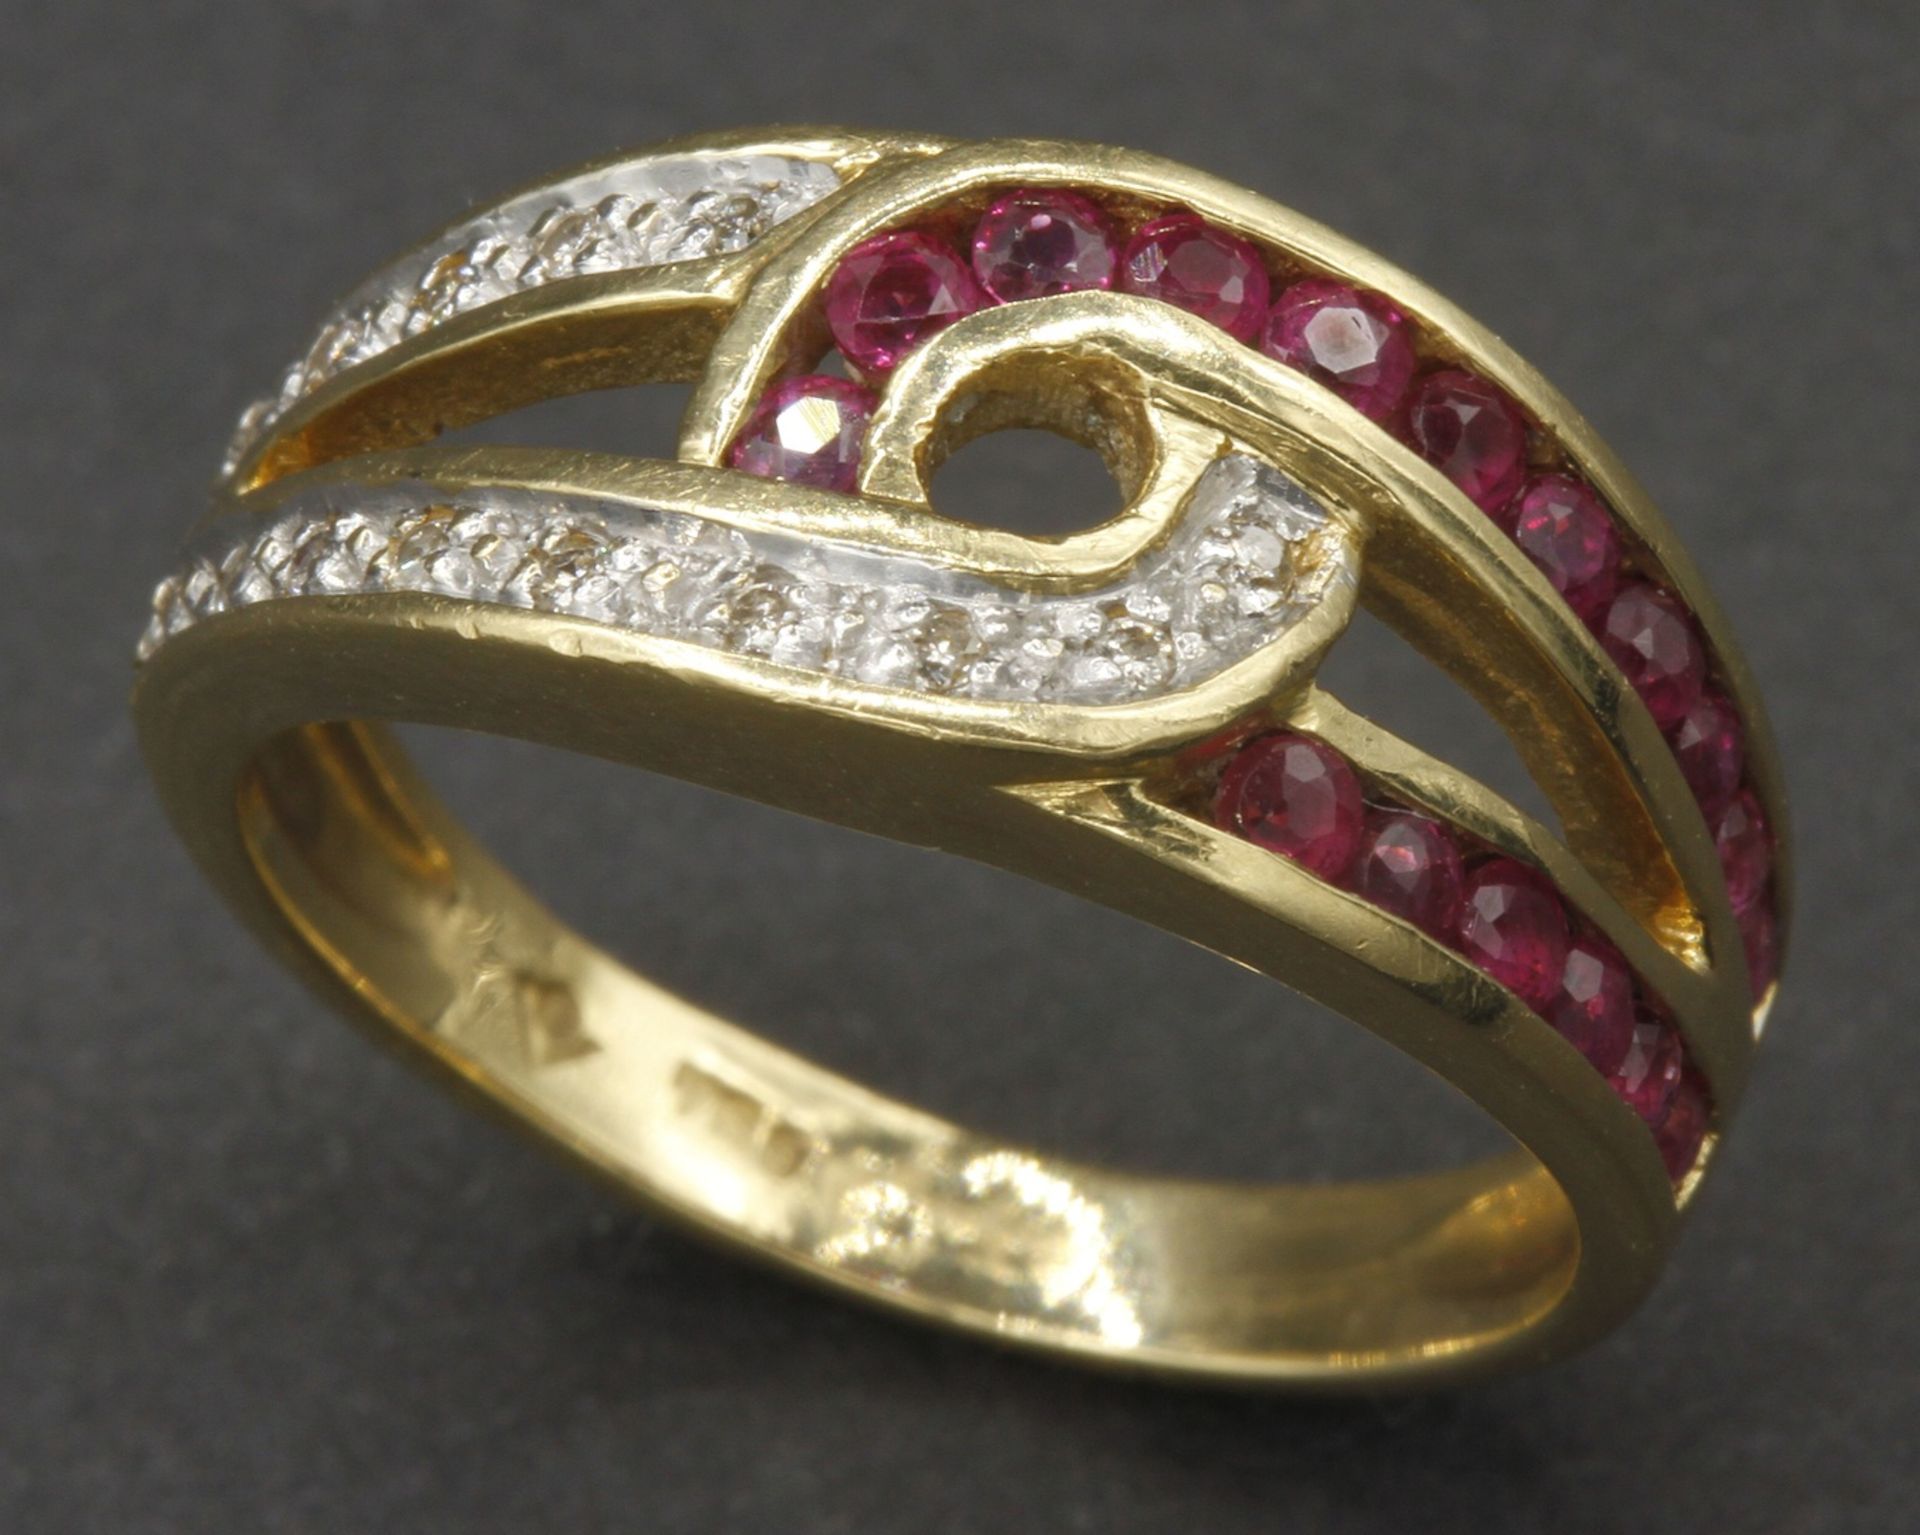 Gelbgold-Ring mit Rubinen und Diamanten750/- Gelbgold, 17 ca. 0,04 ct Rubine im Rundschliff,